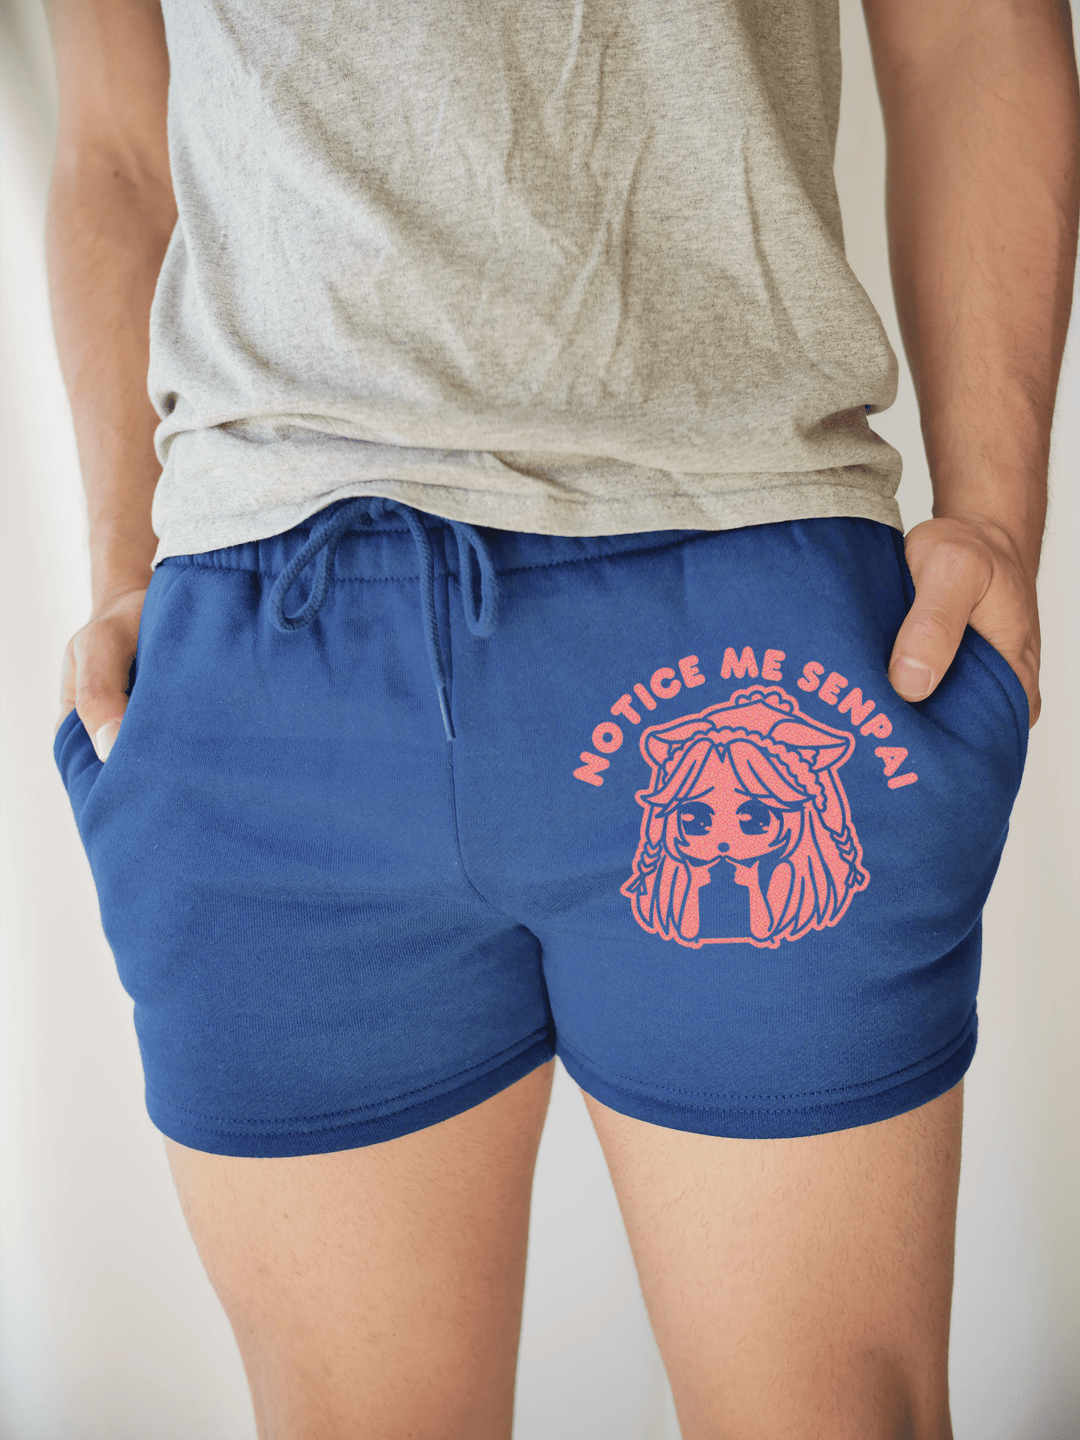 PixelThat Punderwear Shorts Royal Blue / S / Front Notice Me Senpai Men's Gym Shorts